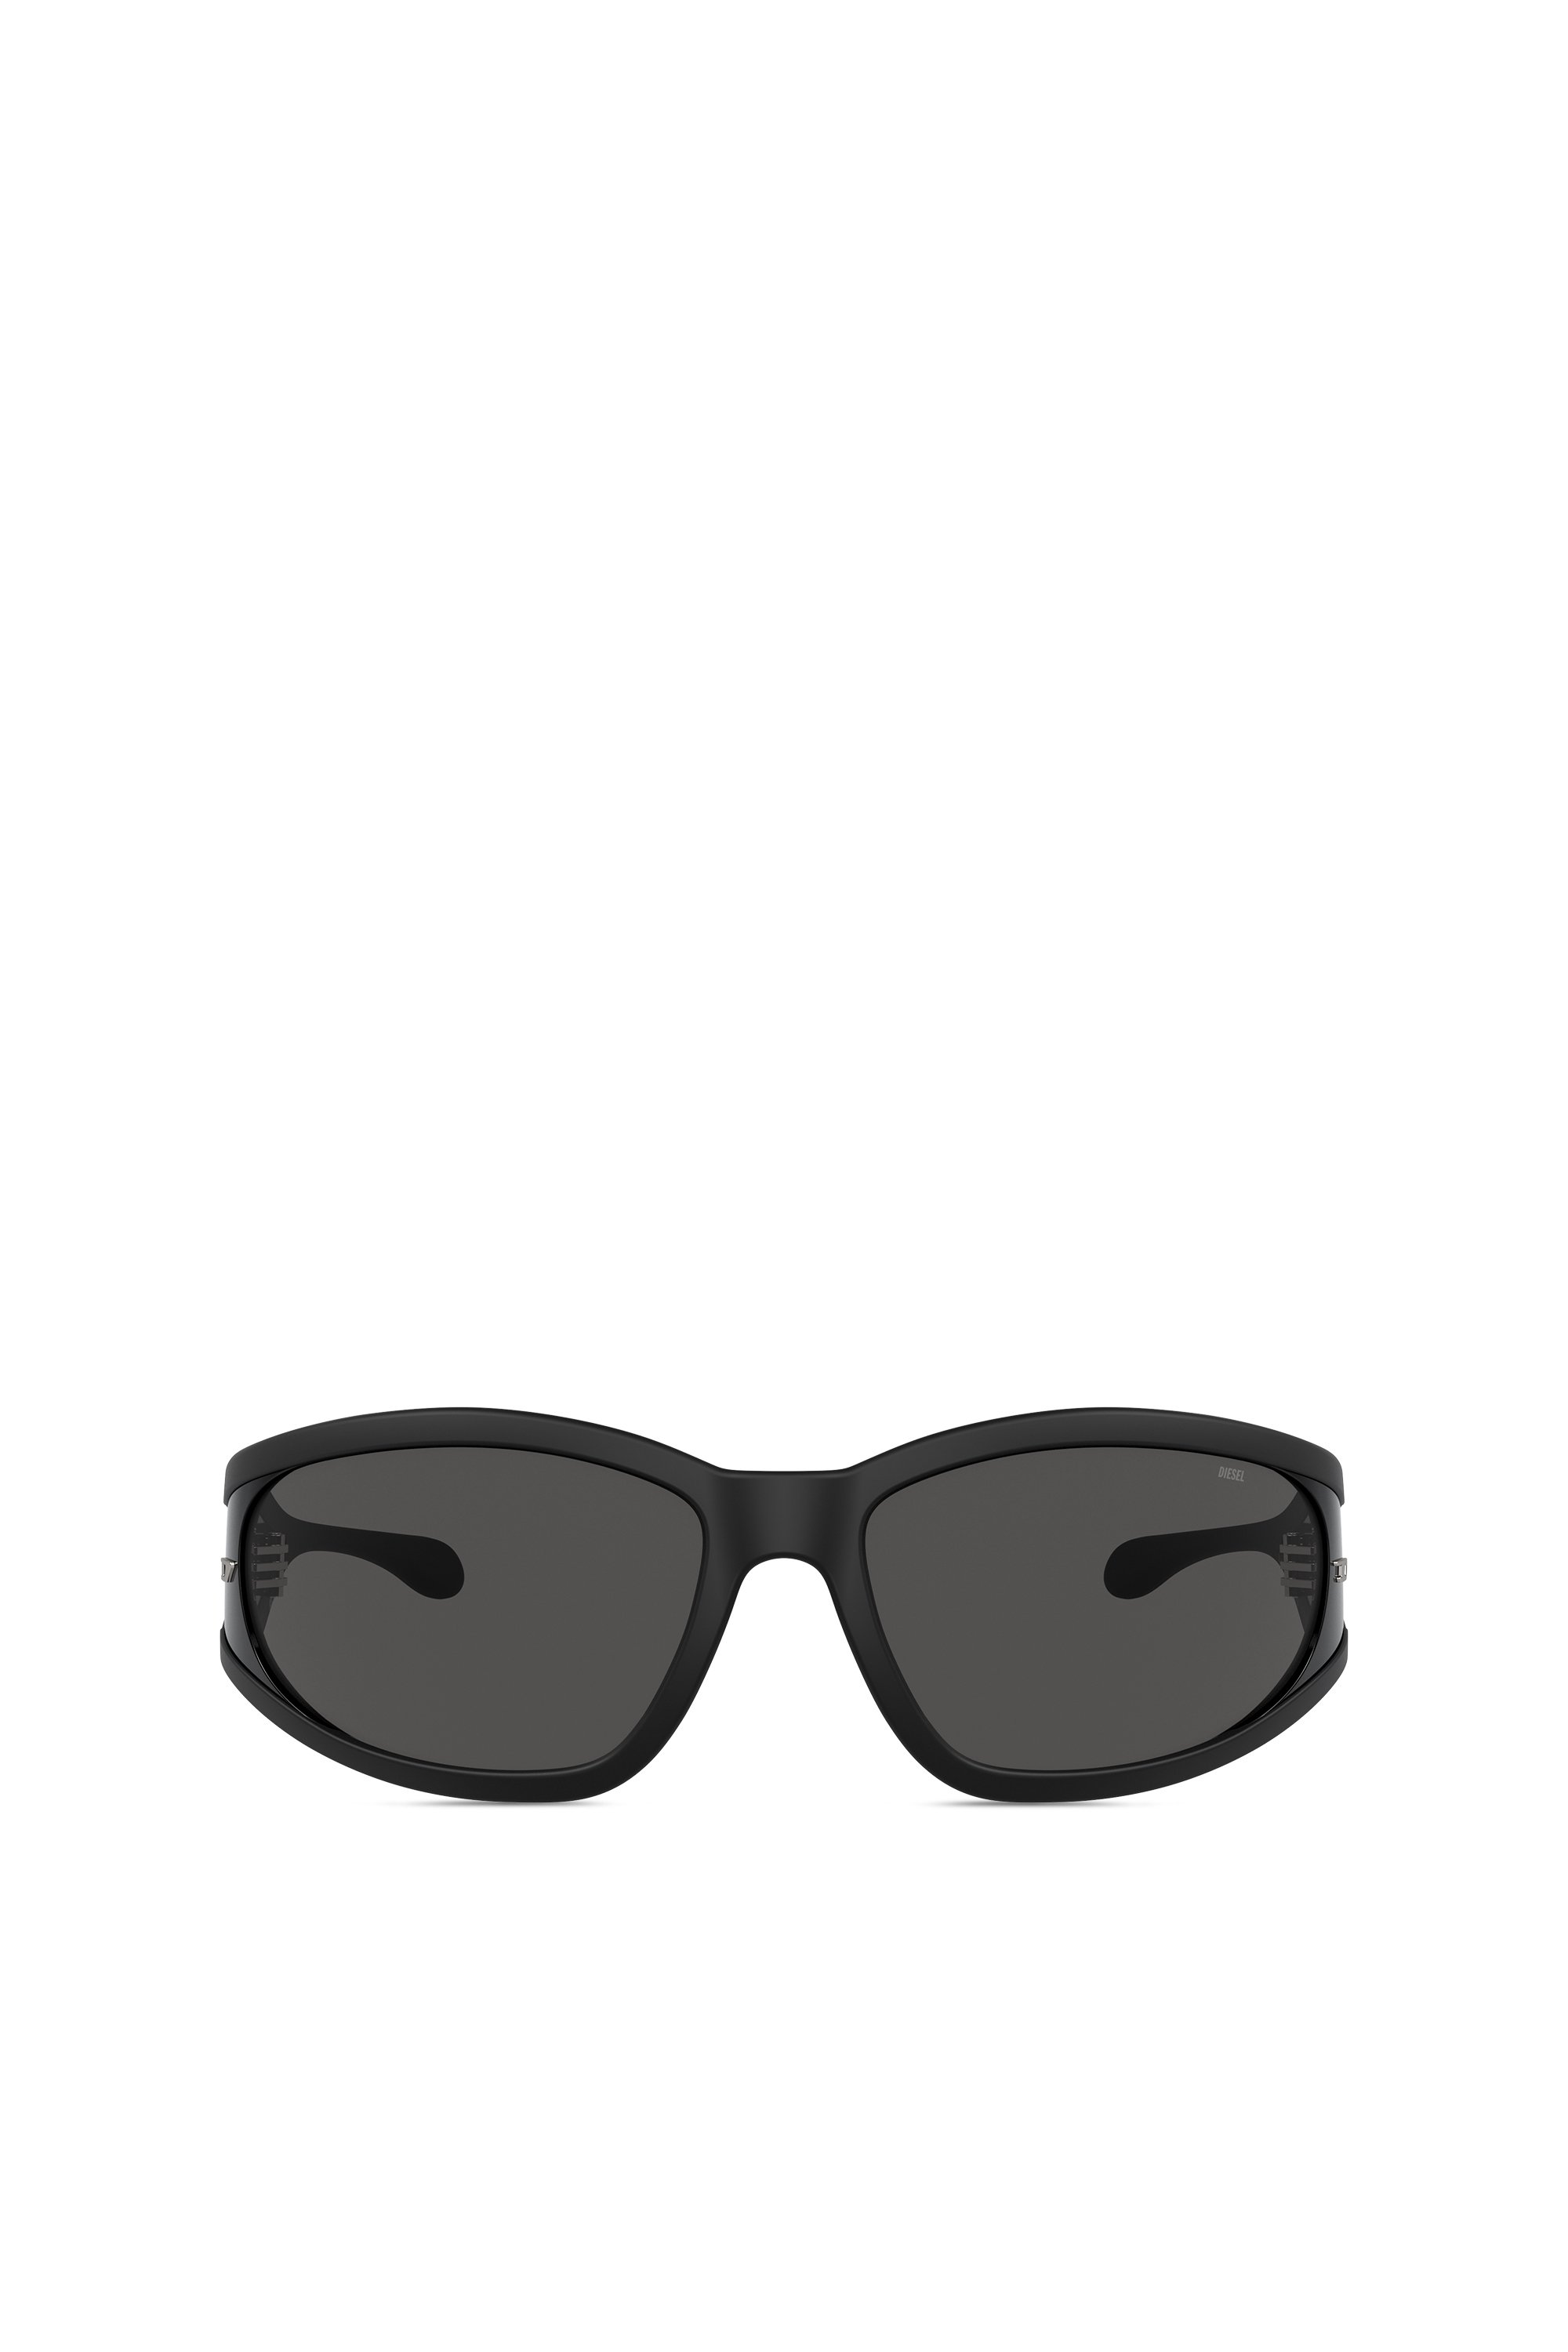 Diesel - Sonnenbrille aus acetat mit rechteckigen gläsern - Sonnenbrille - Unisex - Schwarz